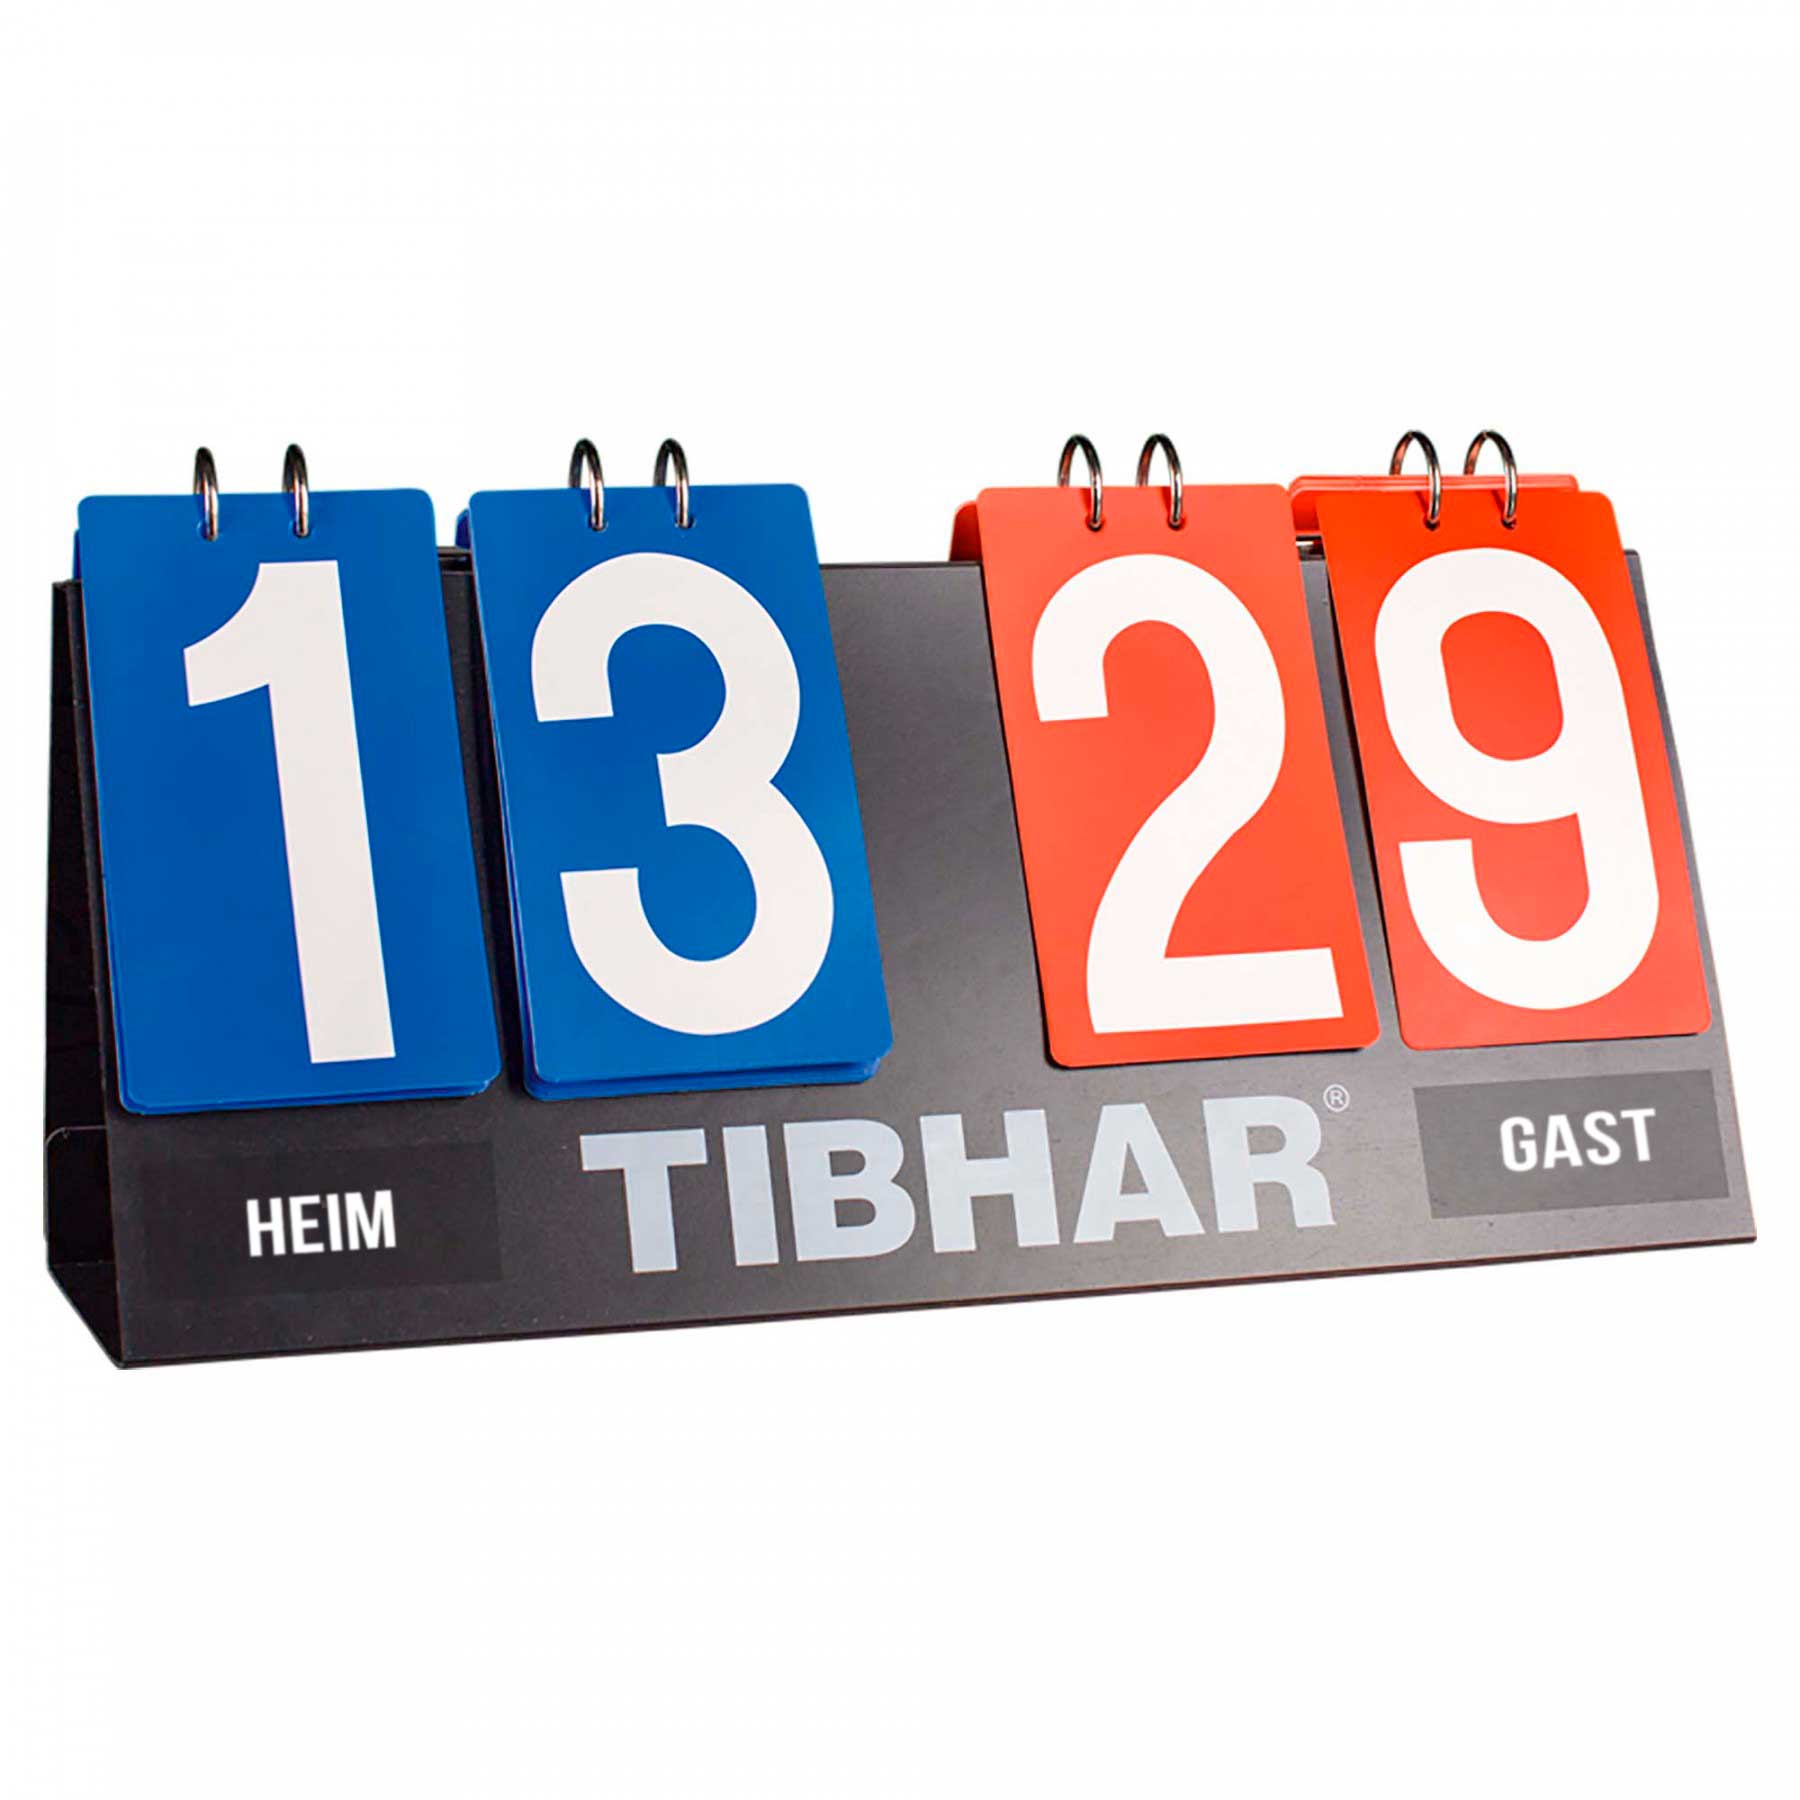 TIBHAR Scorer